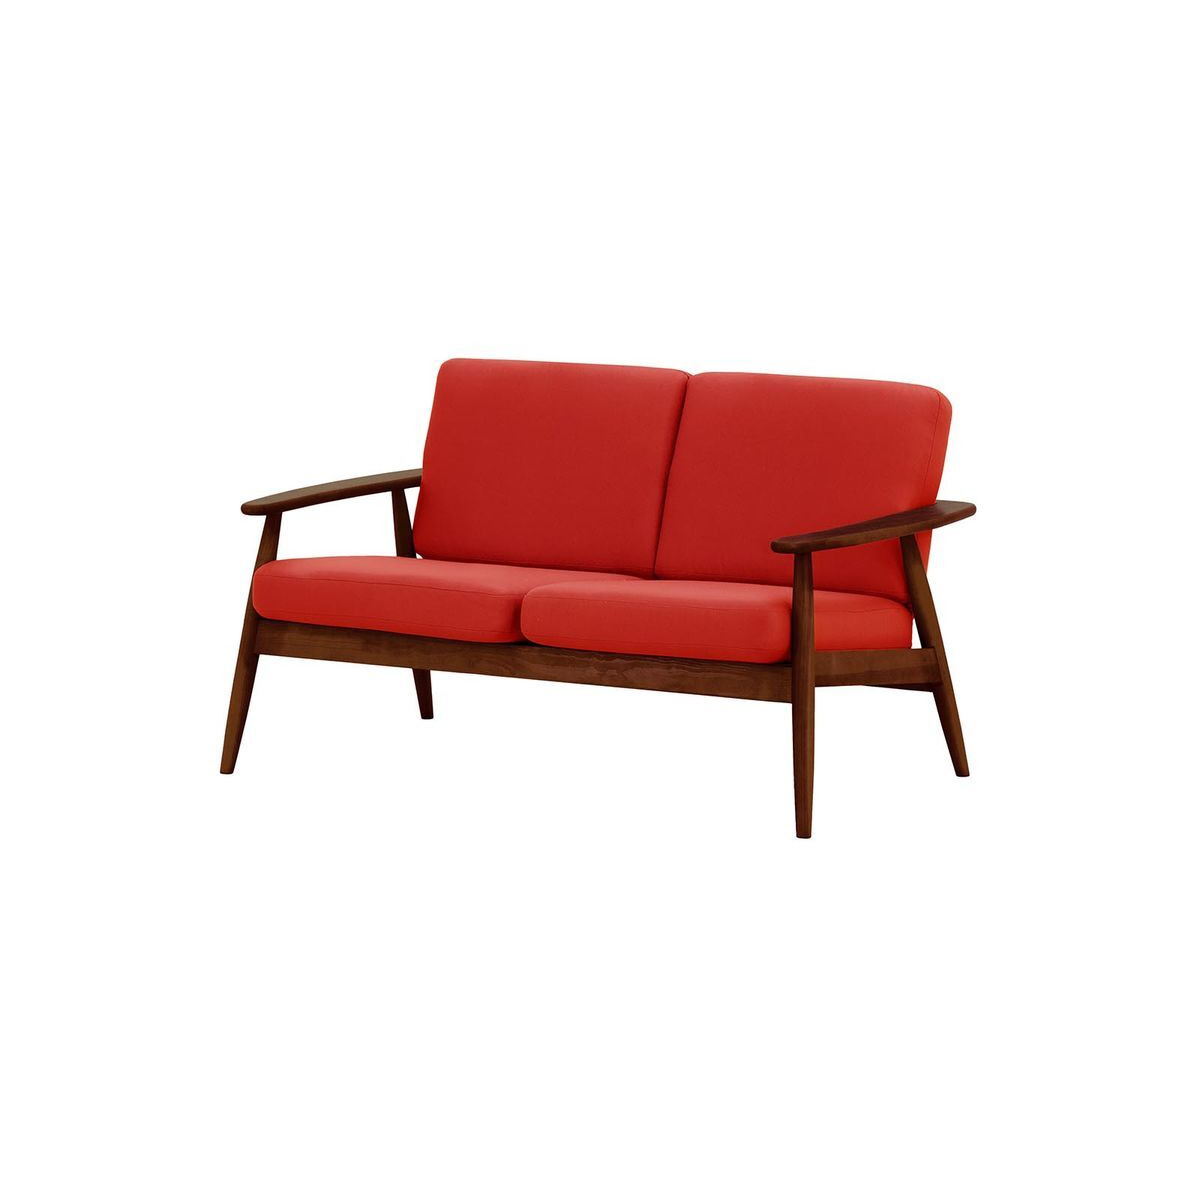 Demure Aqua 2 Seater Garden Sofa, red, Leg colour: 8007 dark oak - image 1